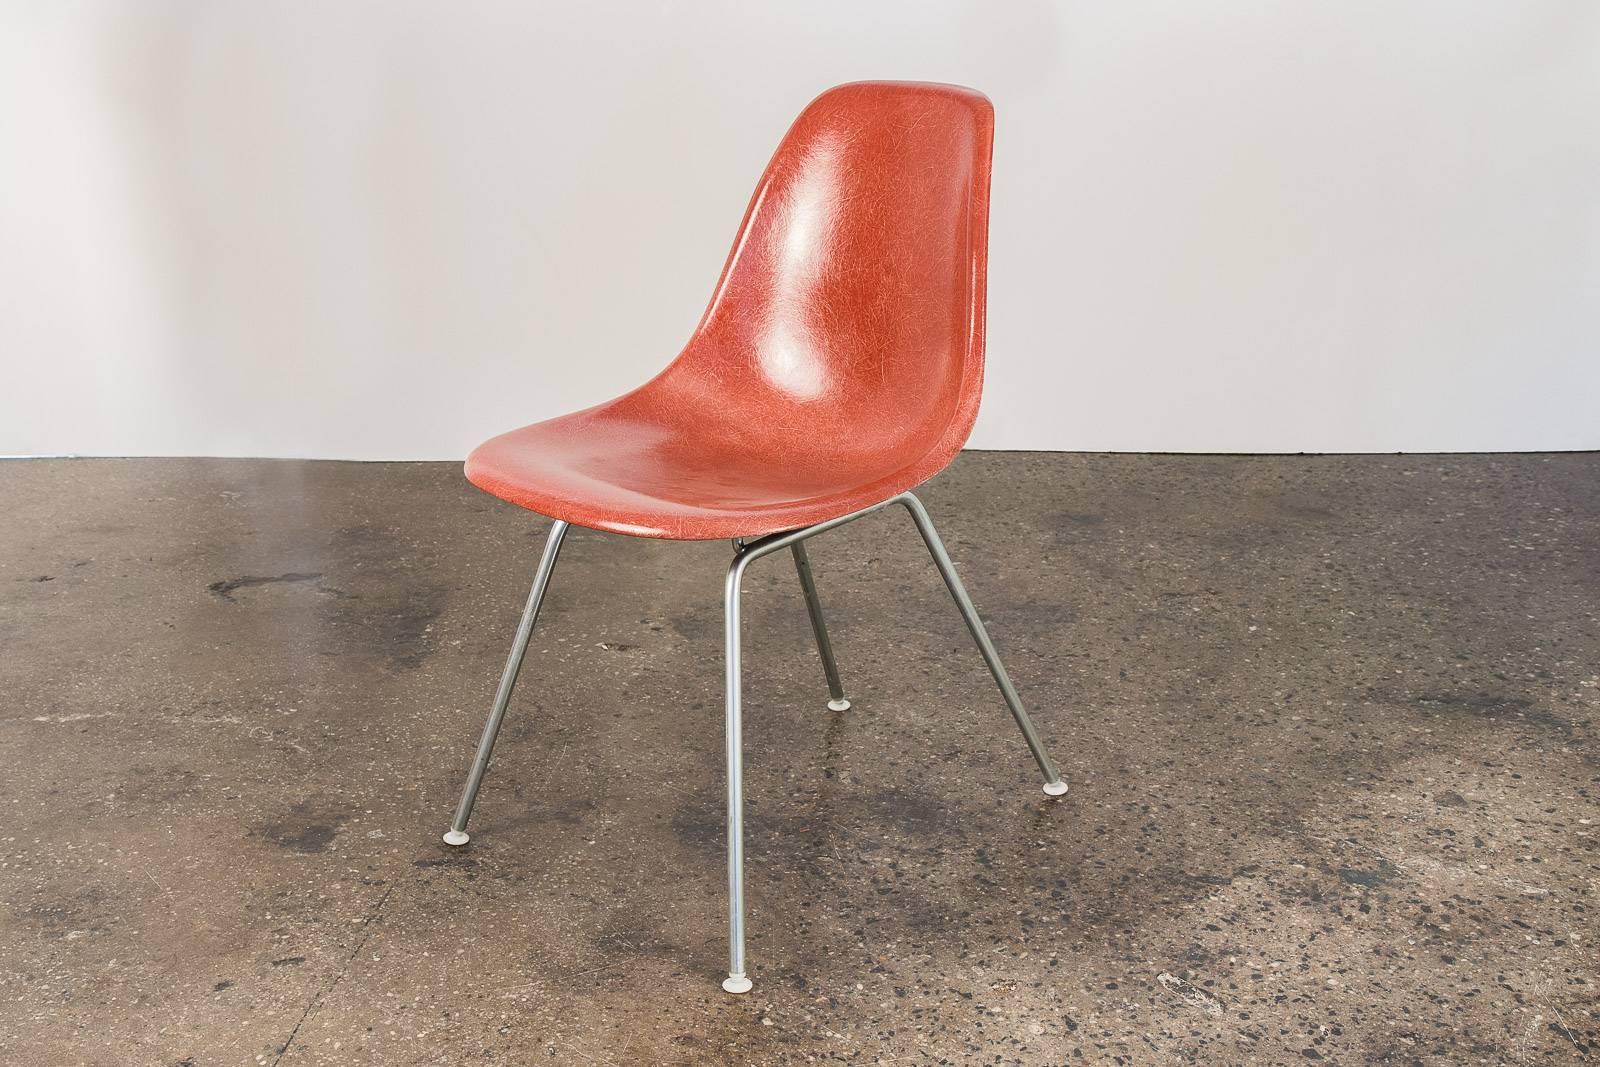 Original 1960er Jahre Eames Terrakotta Fiberglas Schale Stühle mit original H Basen, entworfen von Charles und Ray Eames für Herman Miller. Die seltene Terrakottaschale hat ihre ursprüngliche Oberfläche mit ausgeprägter Fadentextur. Schmale